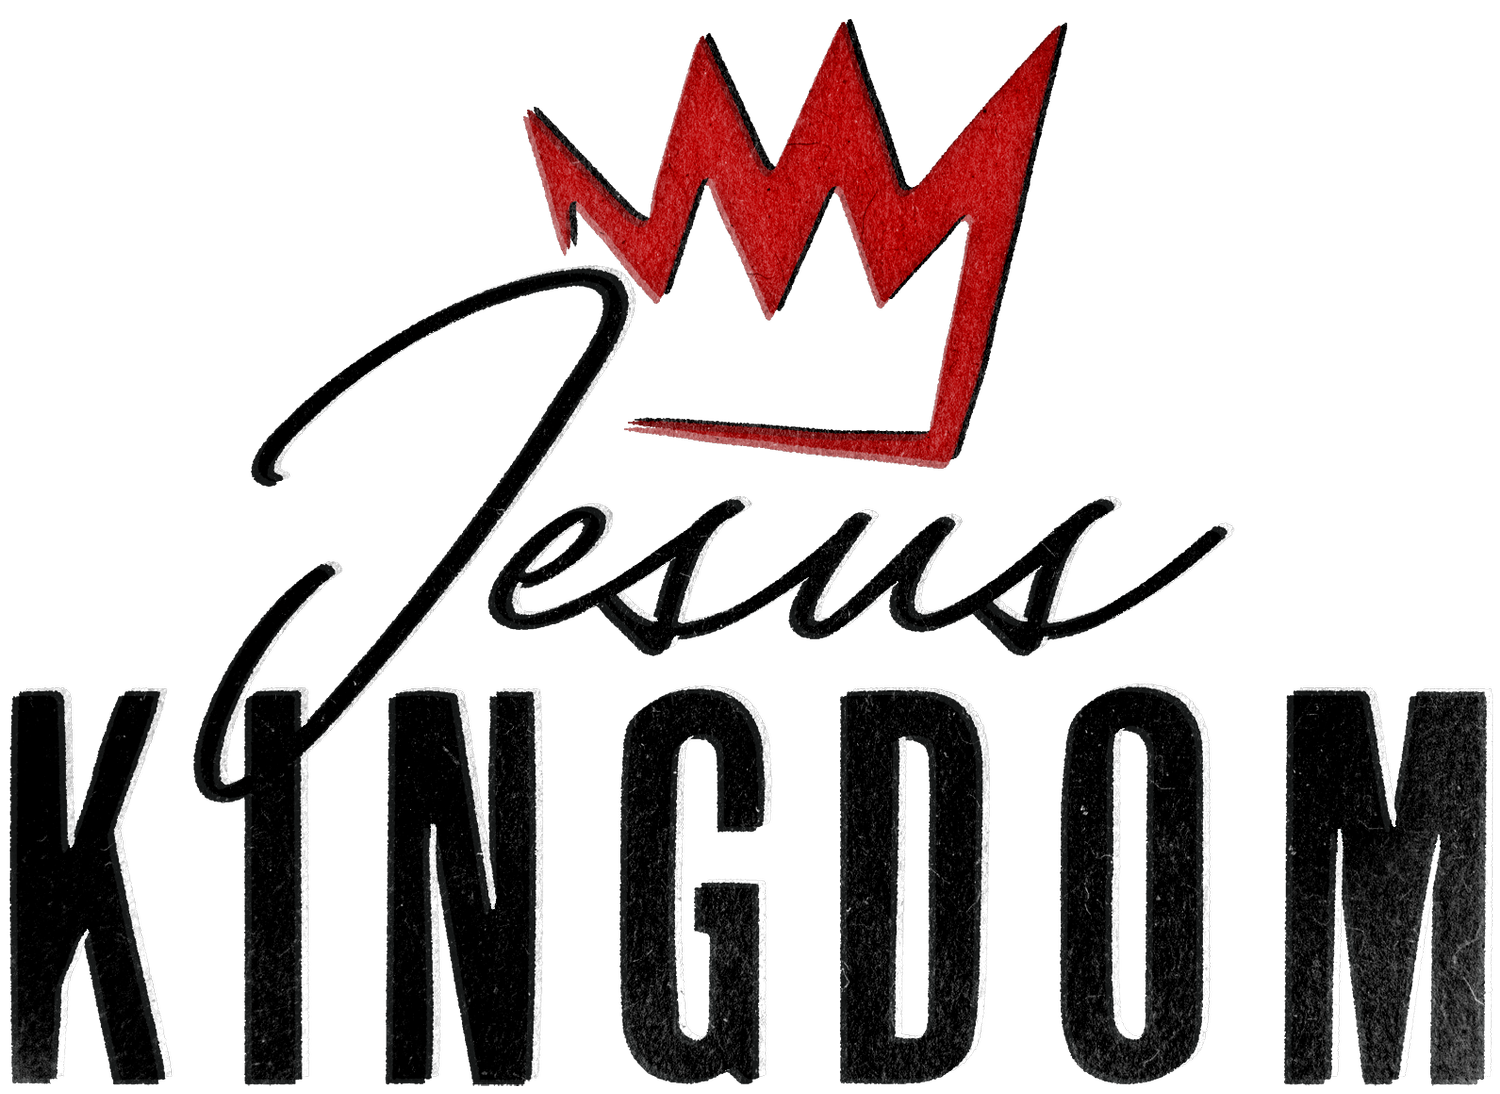 Jesus Kingdom